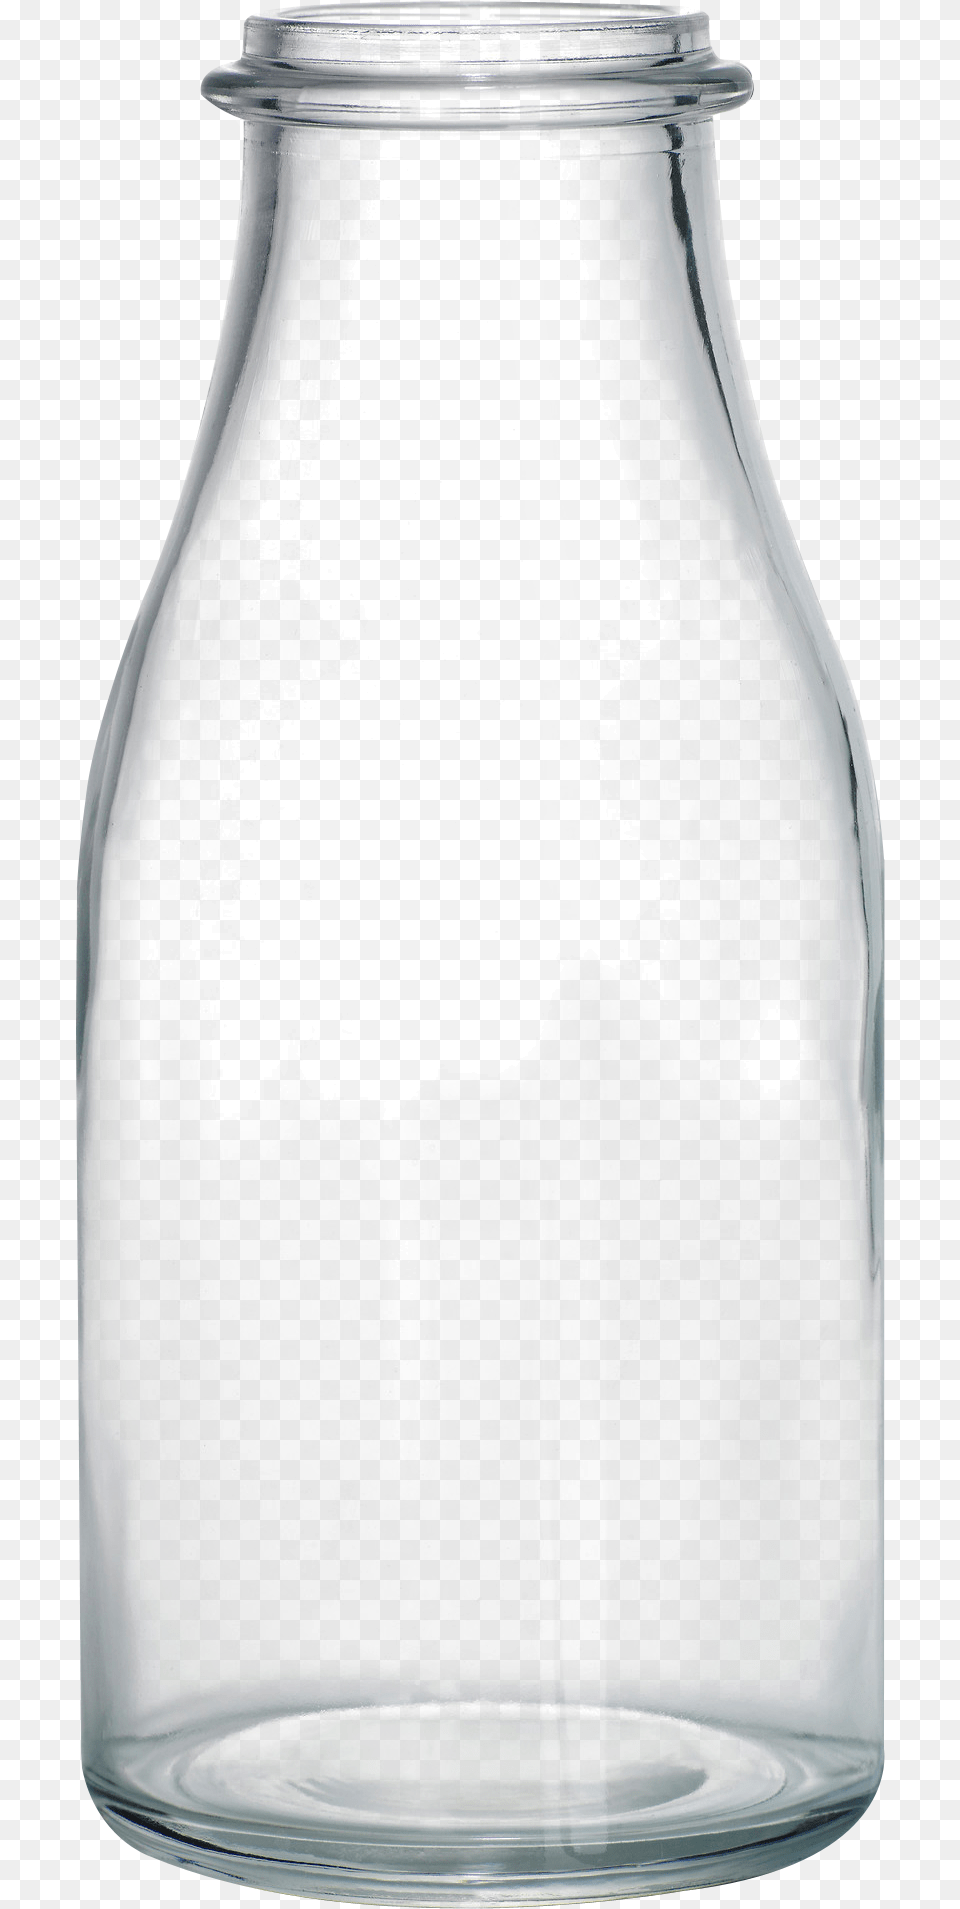 Glass Bottle Glass Bottle Transparent, Jar, Pottery, Vase, Beverage Png Image